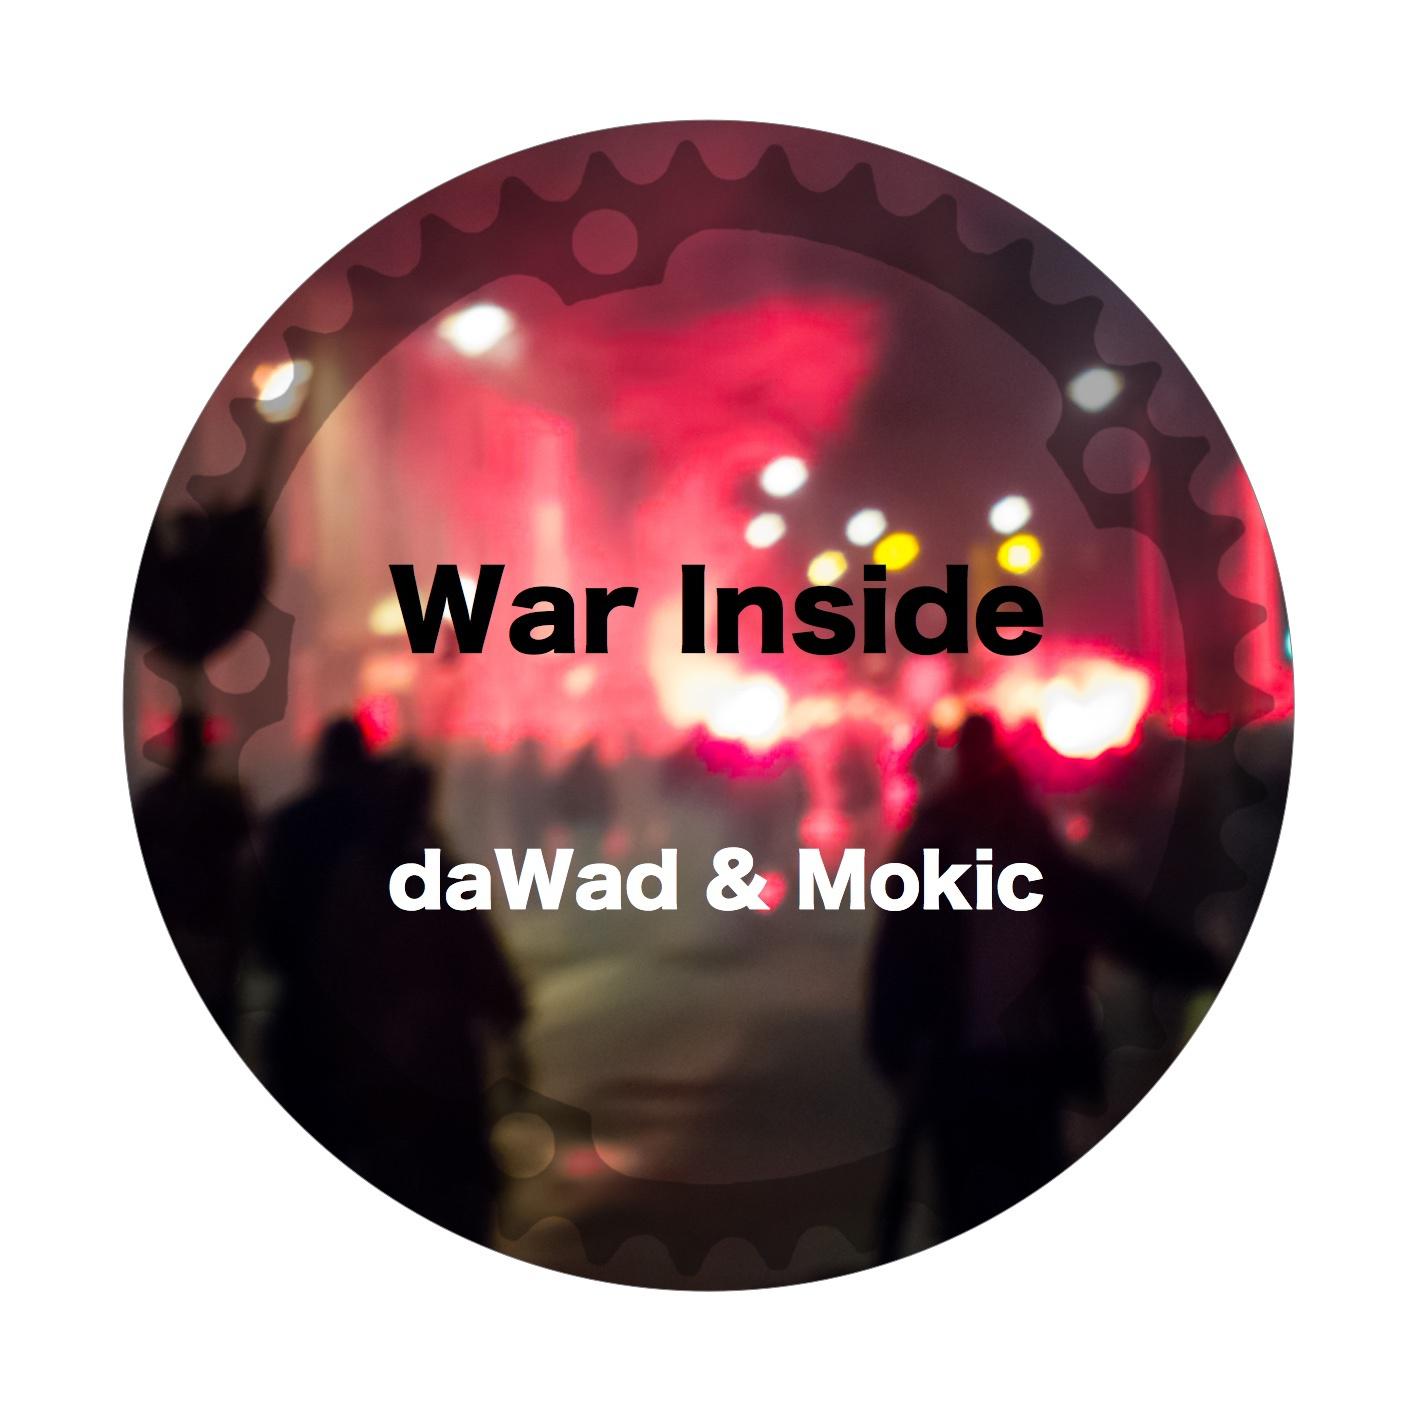 The War Inside (Guitar Mix)